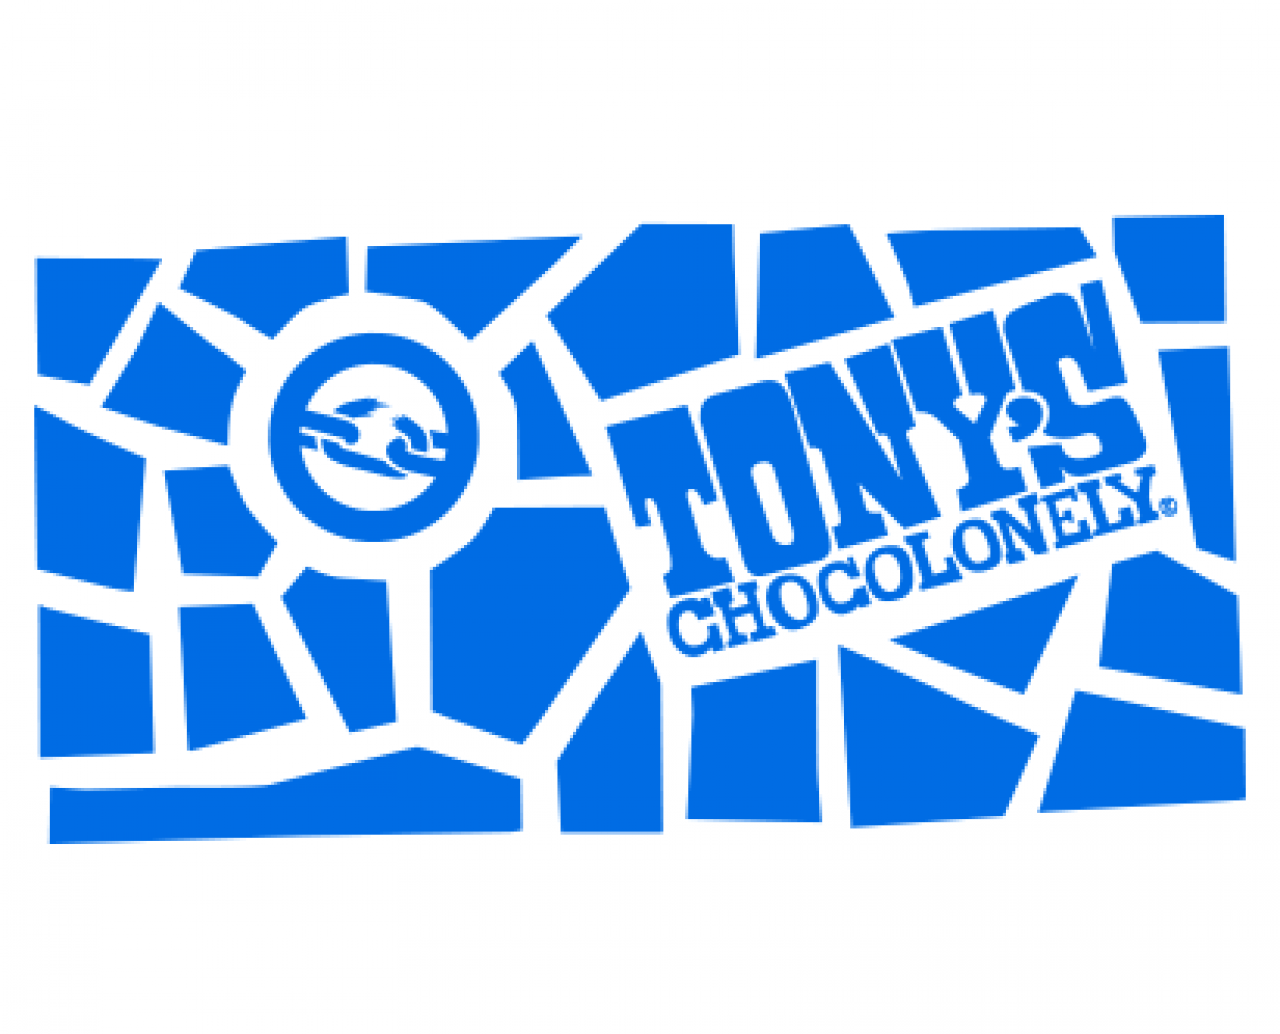 Tony's Logo - Tony's impact - Tony's Chocolonely